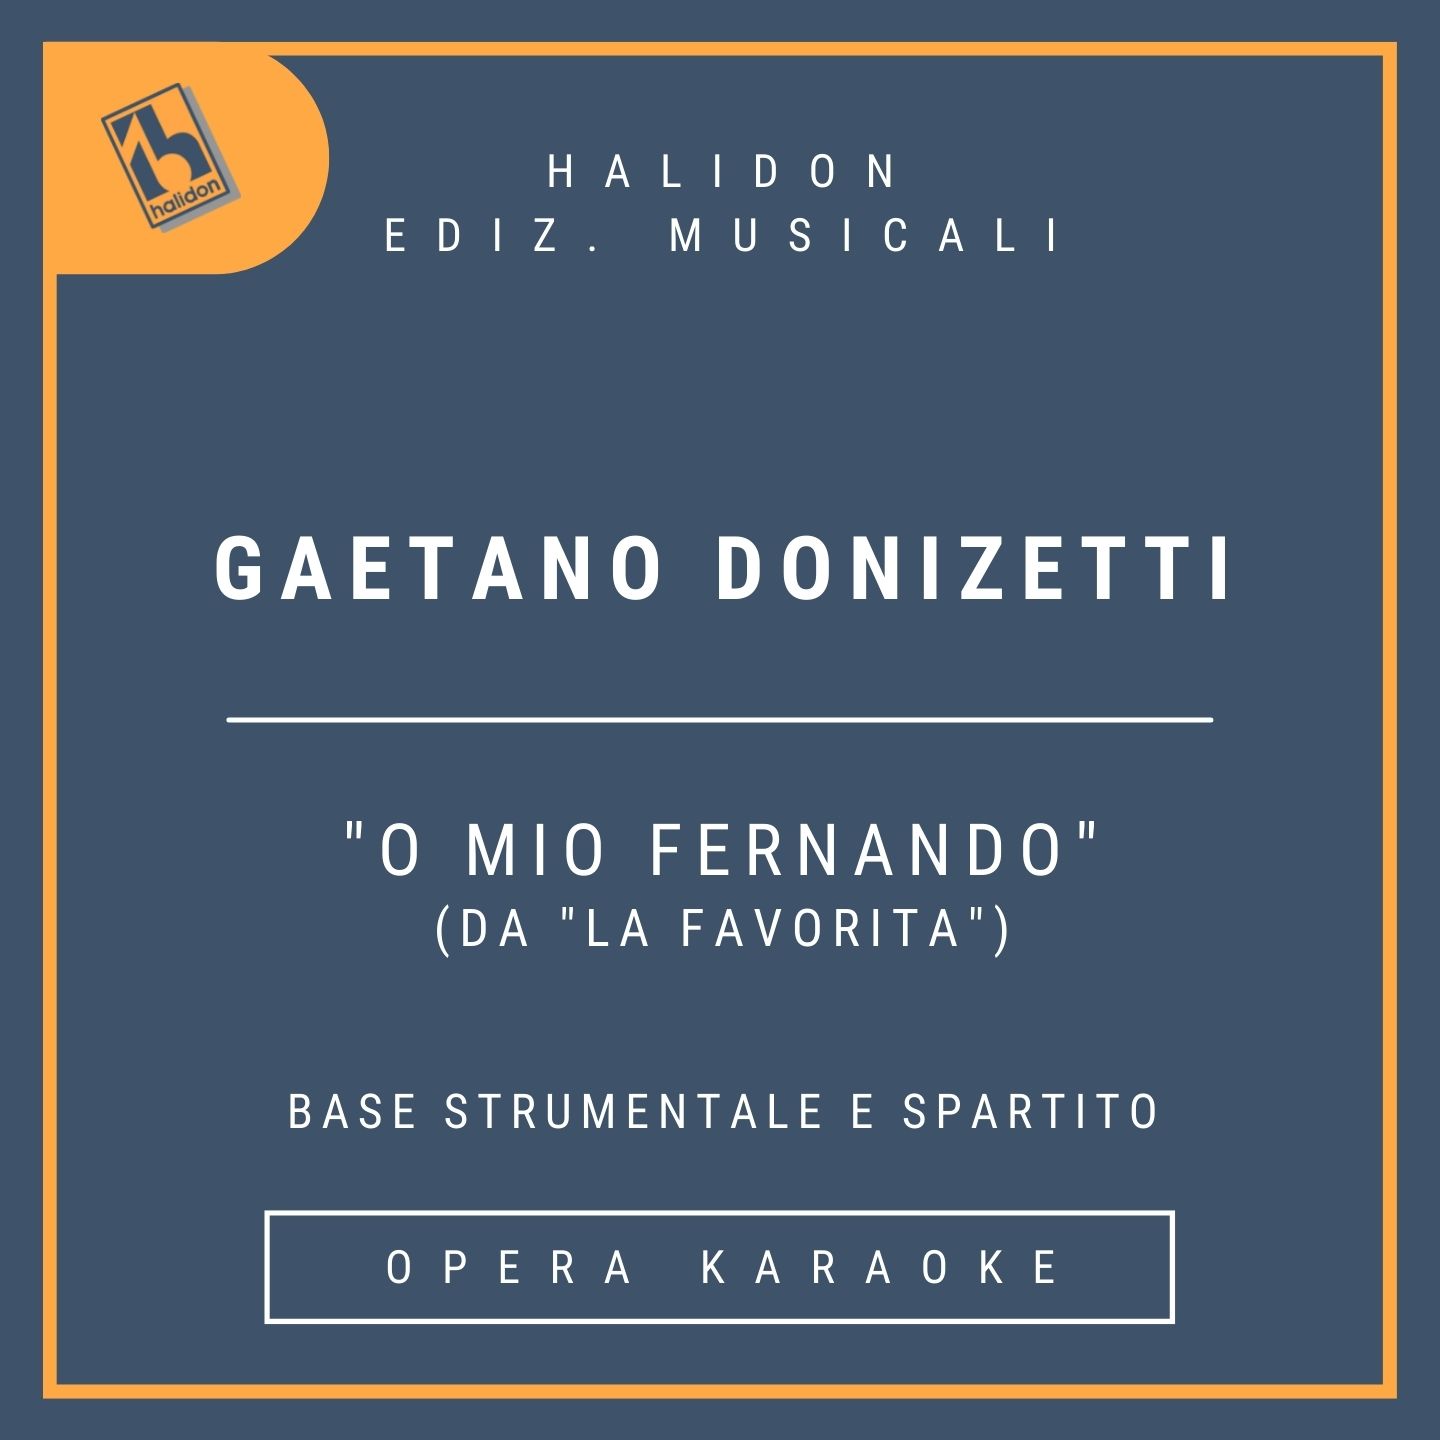 Gaetano Donizetti - O mio Fernando (da 'La favorita') - Aria di Leonora (mezzosoprano) - Base strumentale + spartito